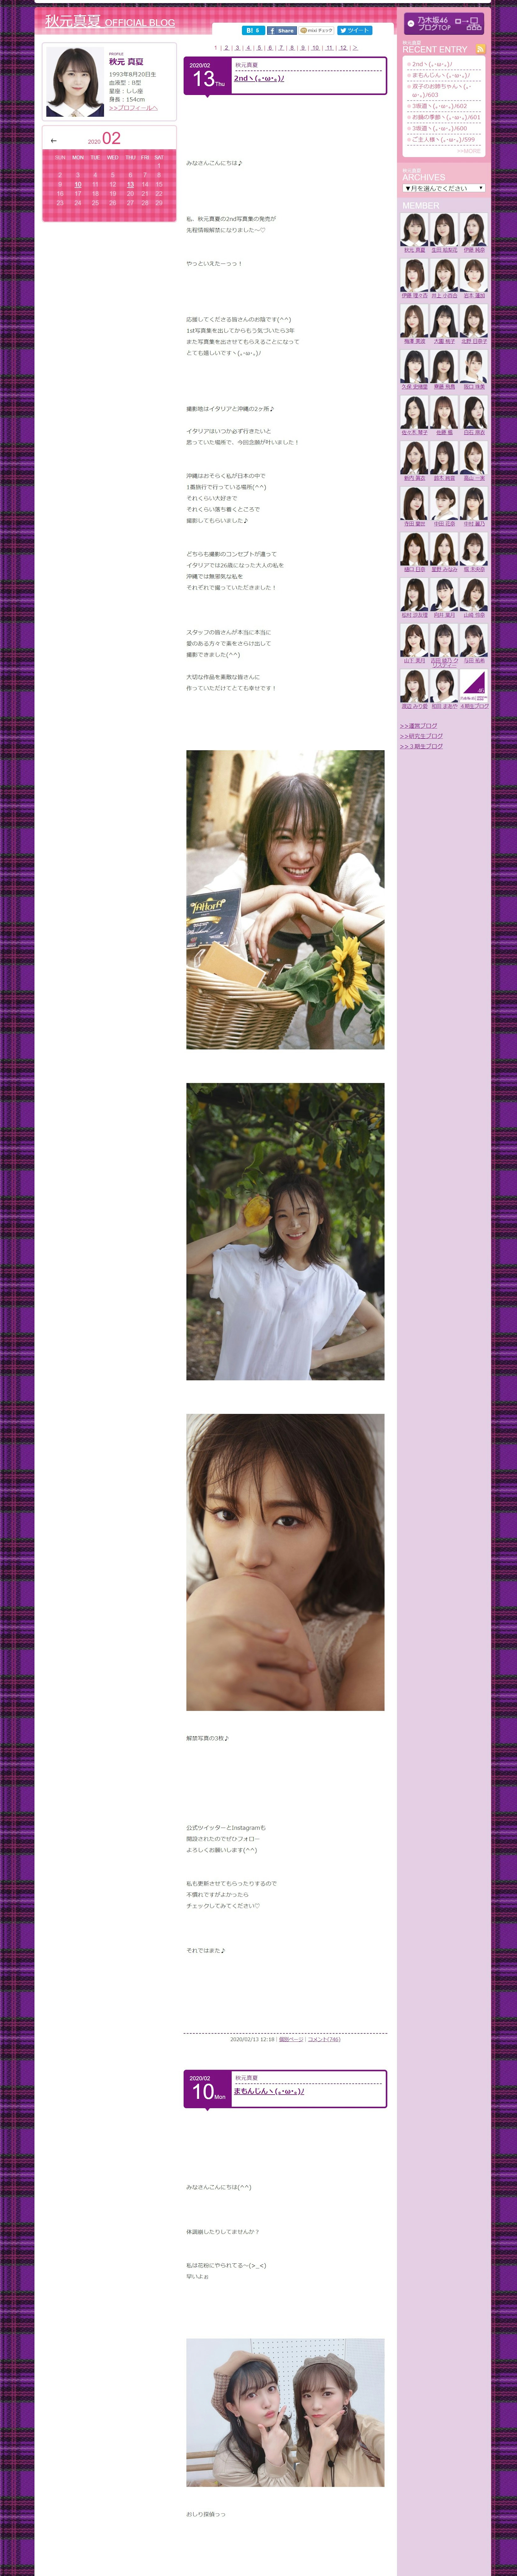 screencapture-blog-nogizaka46-manatsu-akimoto-2020-02-19-12_42_35.jpg